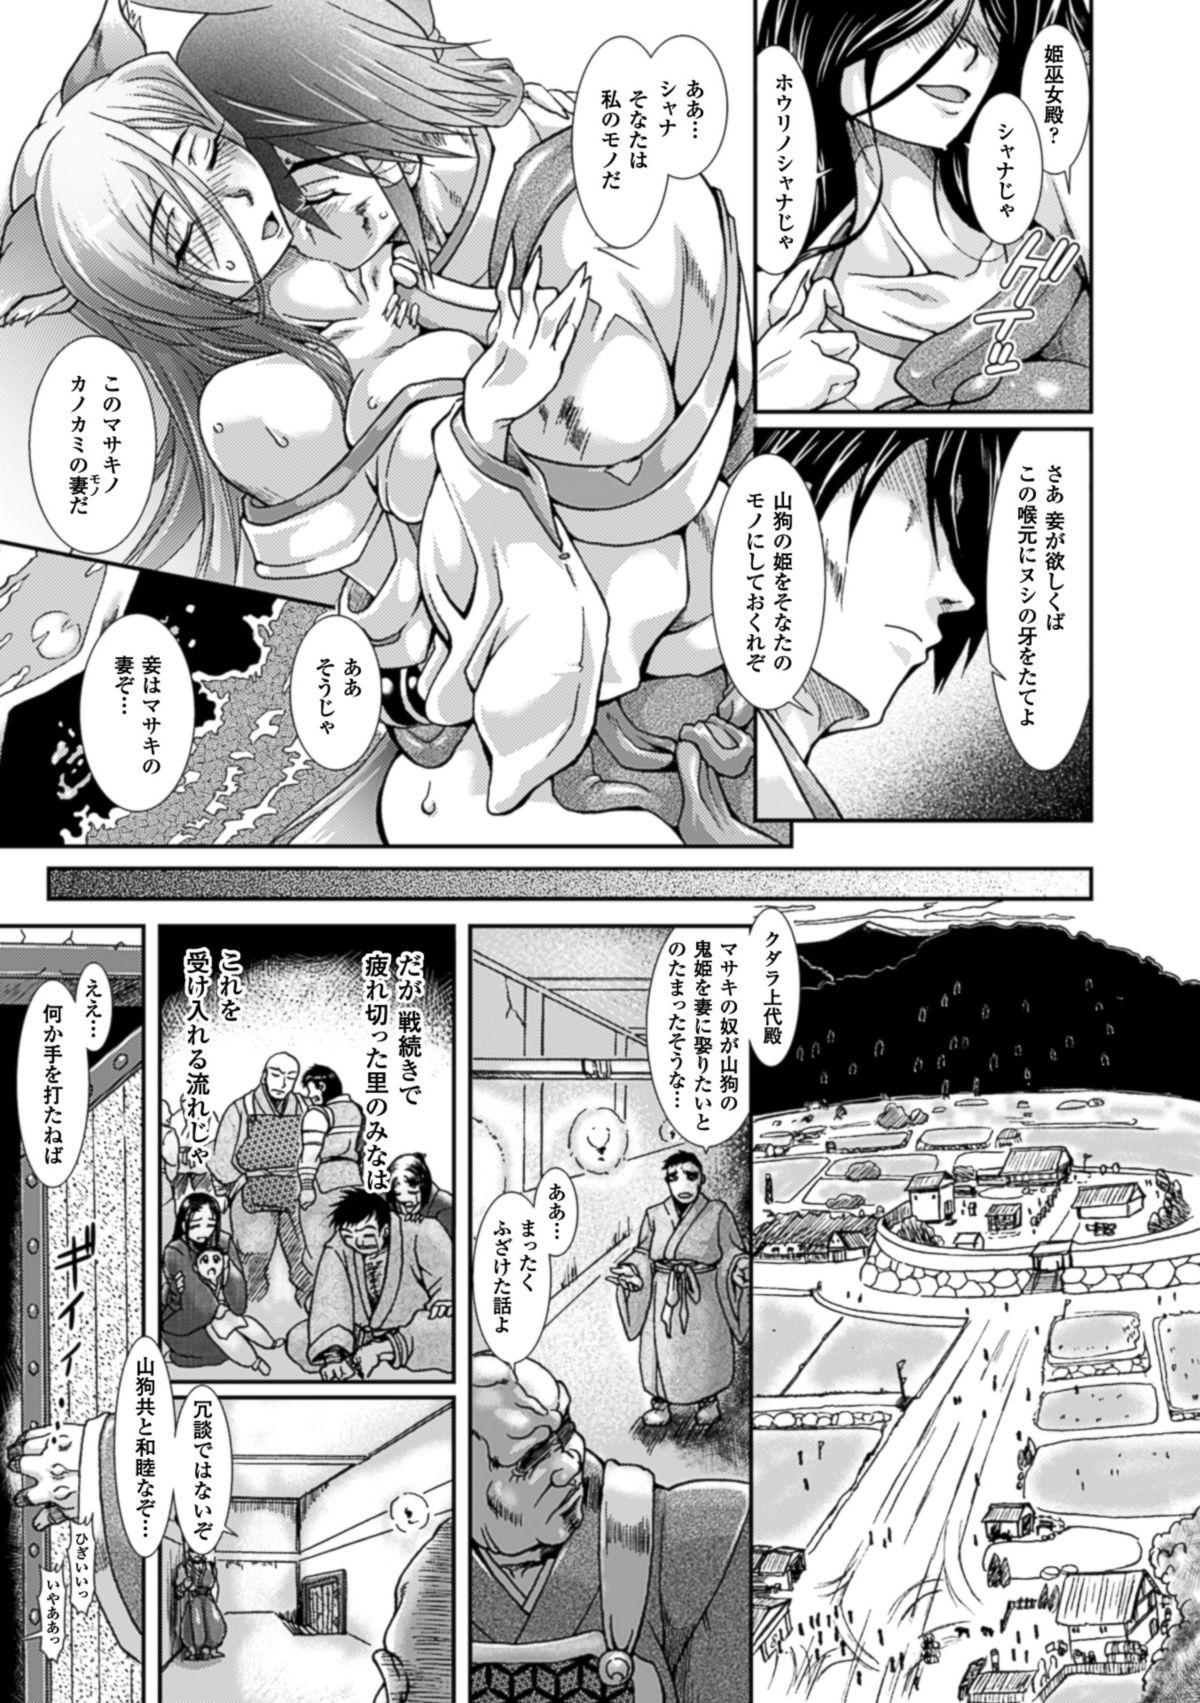 Bunda Shokutai no Yoru Ingoku no Chigiri Redhead - Page 8